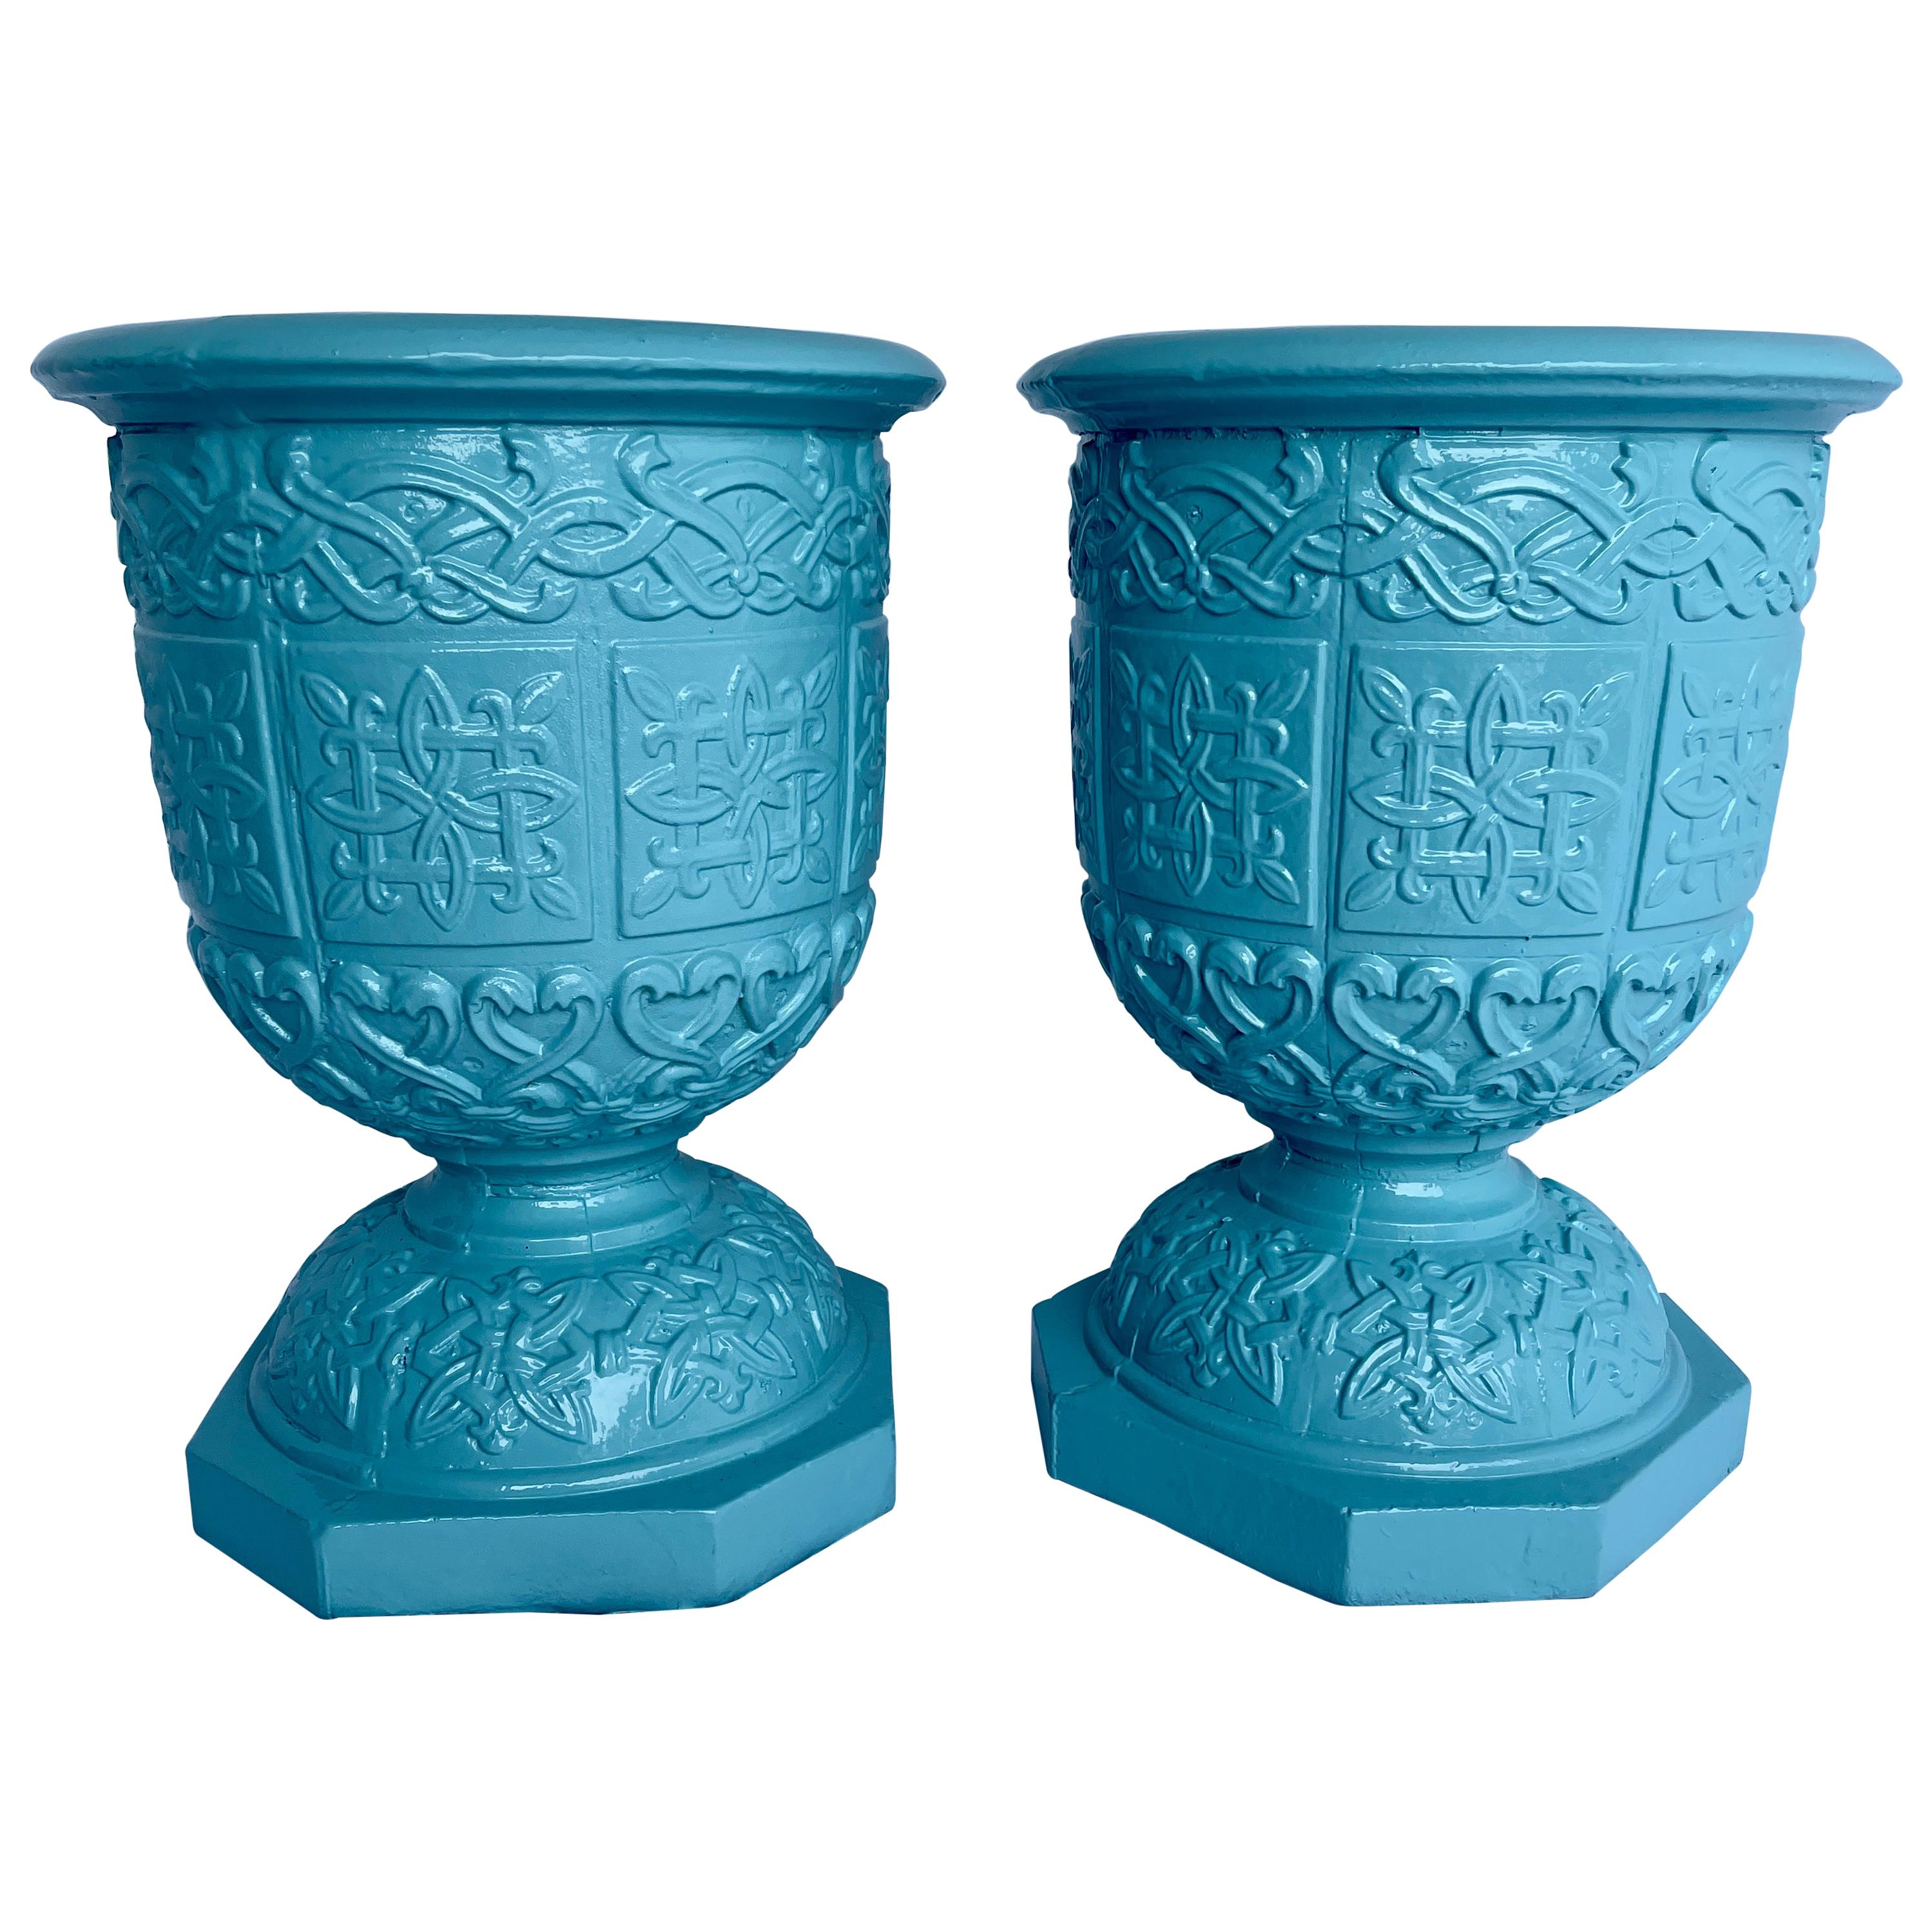 Paire de grandes urnes de jardin en fonte, turquoise thermolaquées